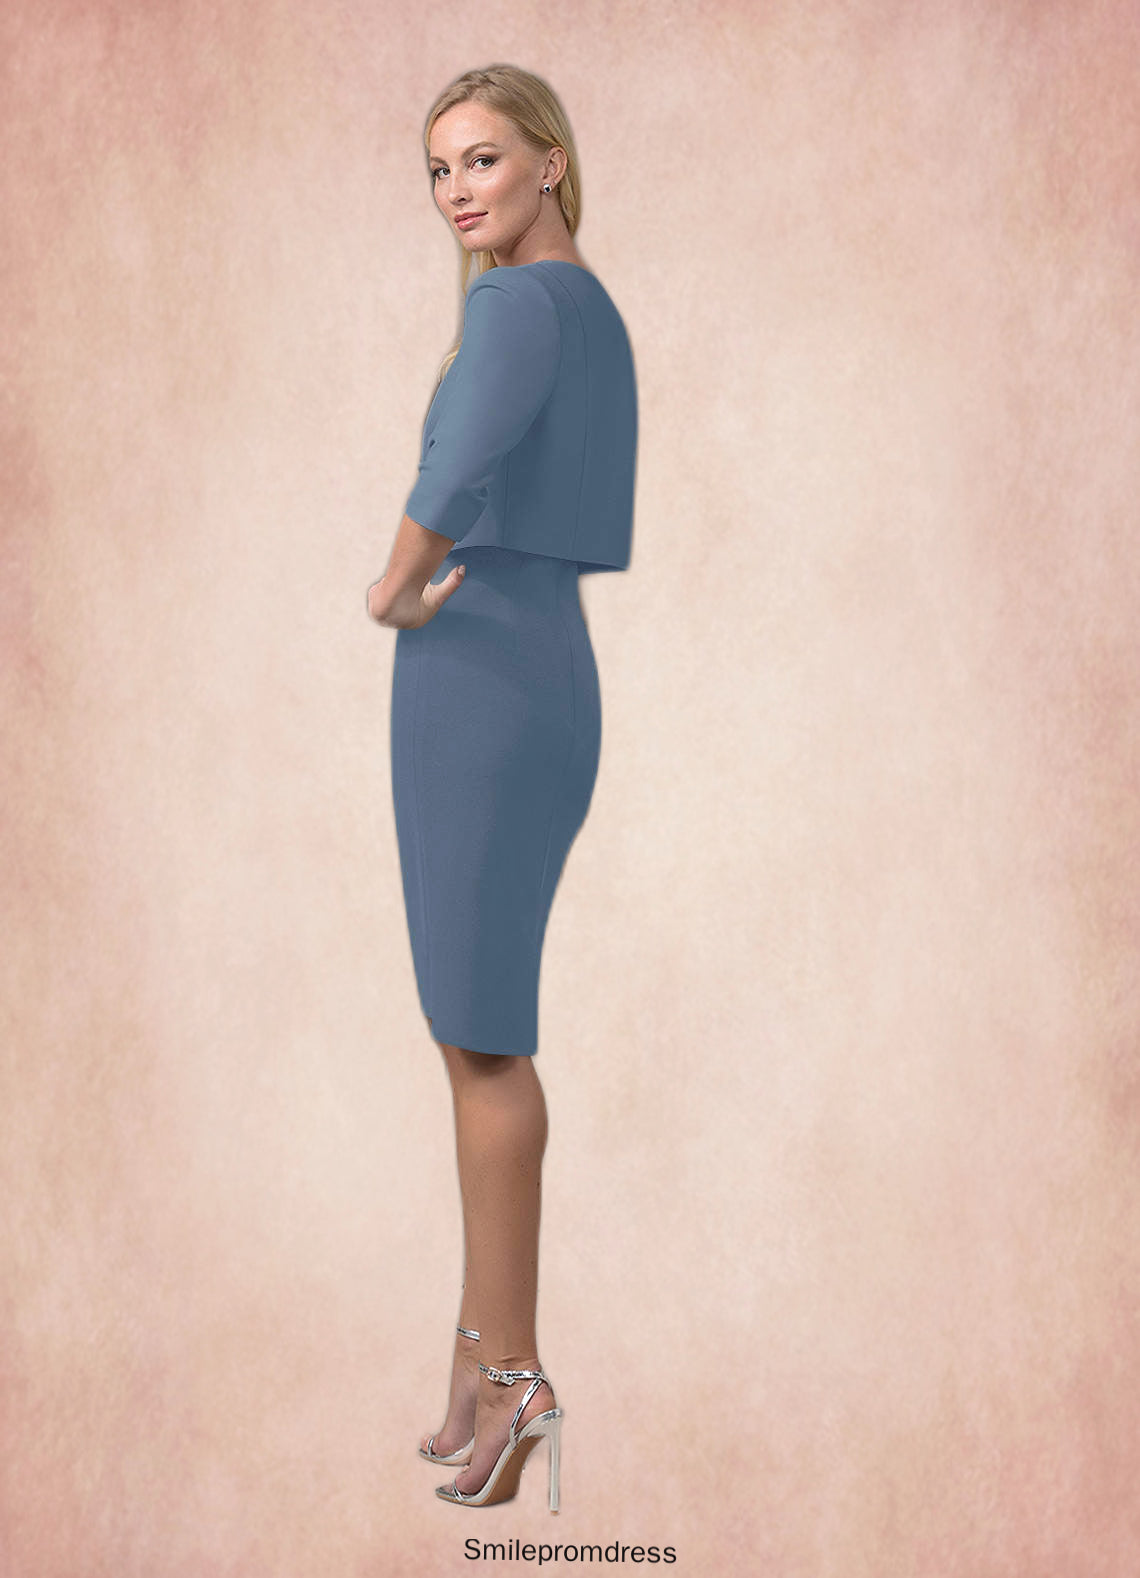 Zoey Sheath Lace Knee-Length Dress P0019896